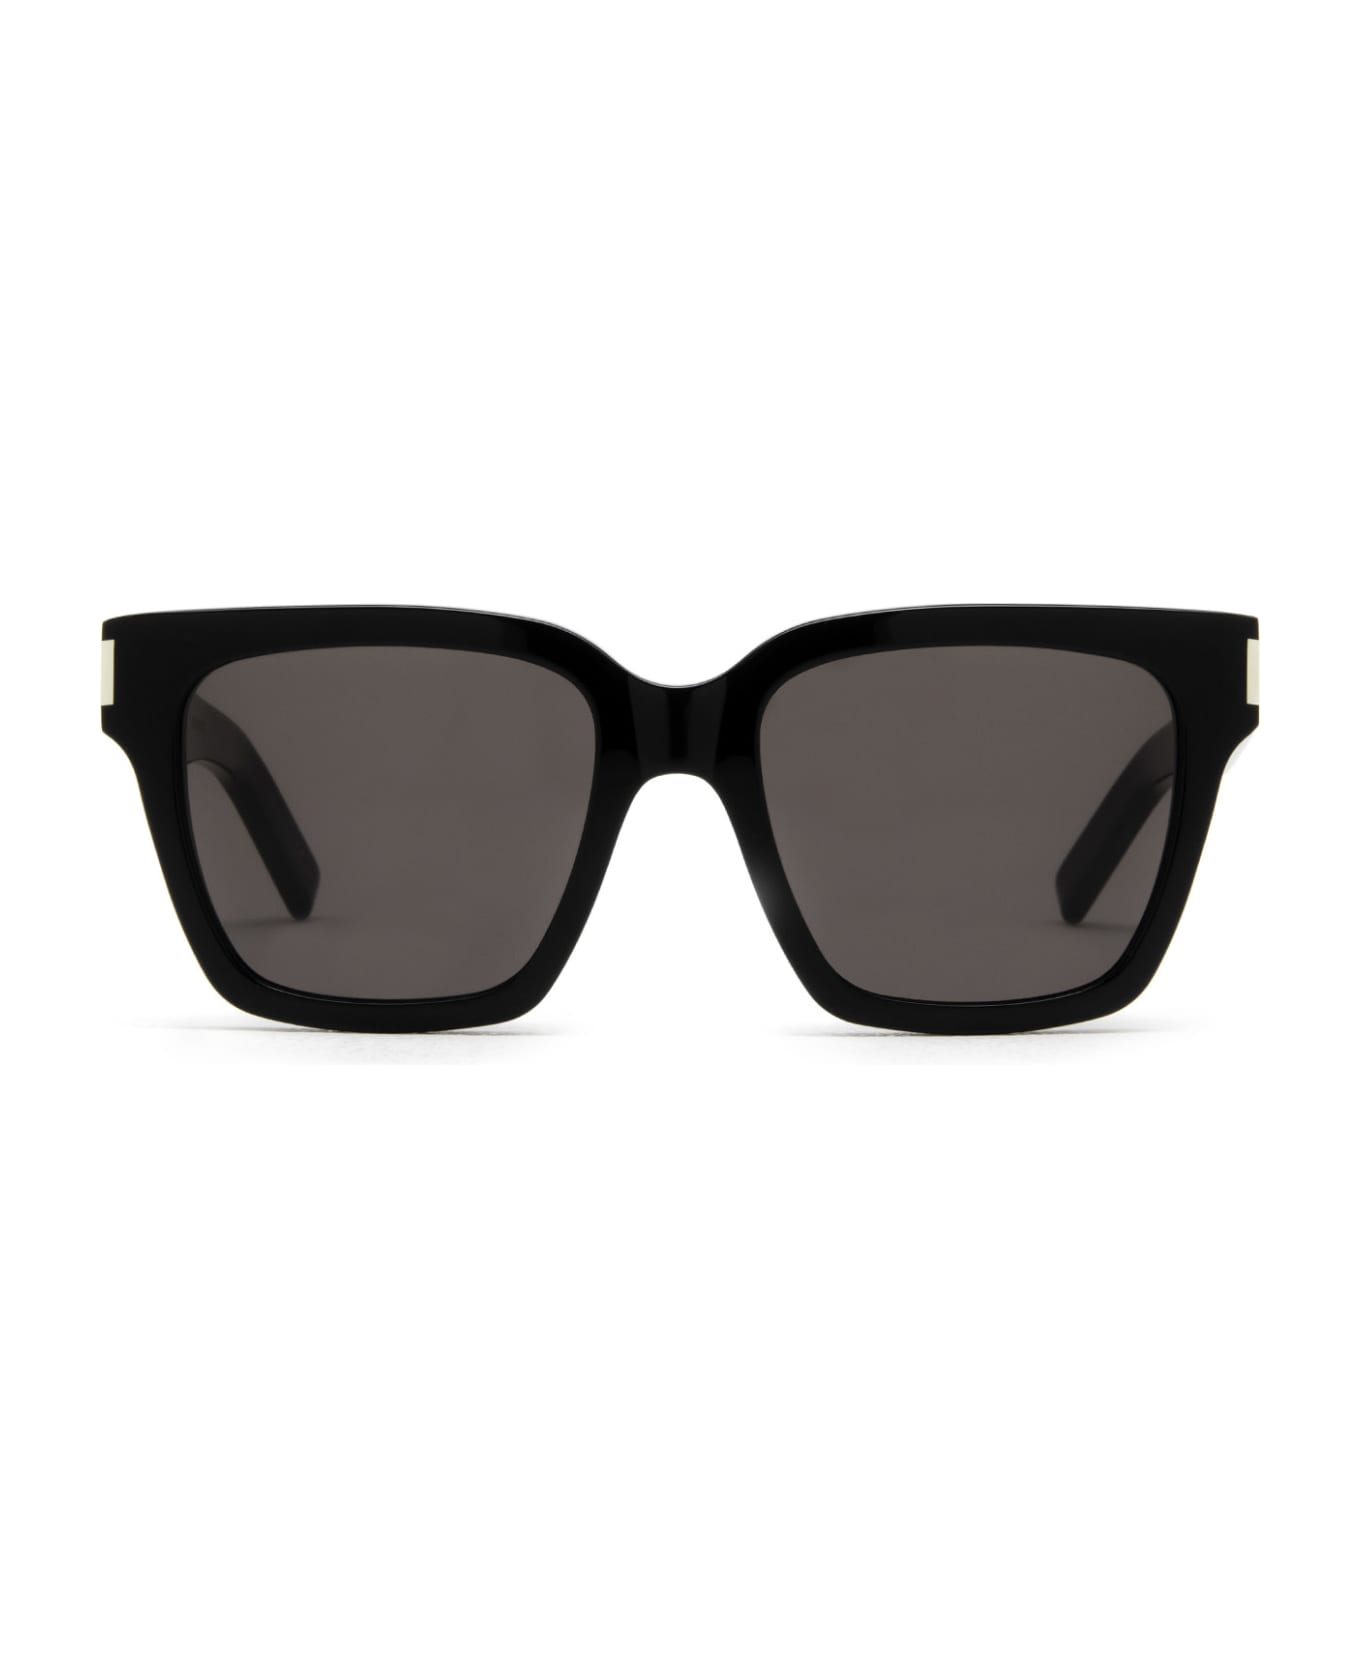 Saint Laurent Eyewear Sl 507 Black Sunglasses - Black